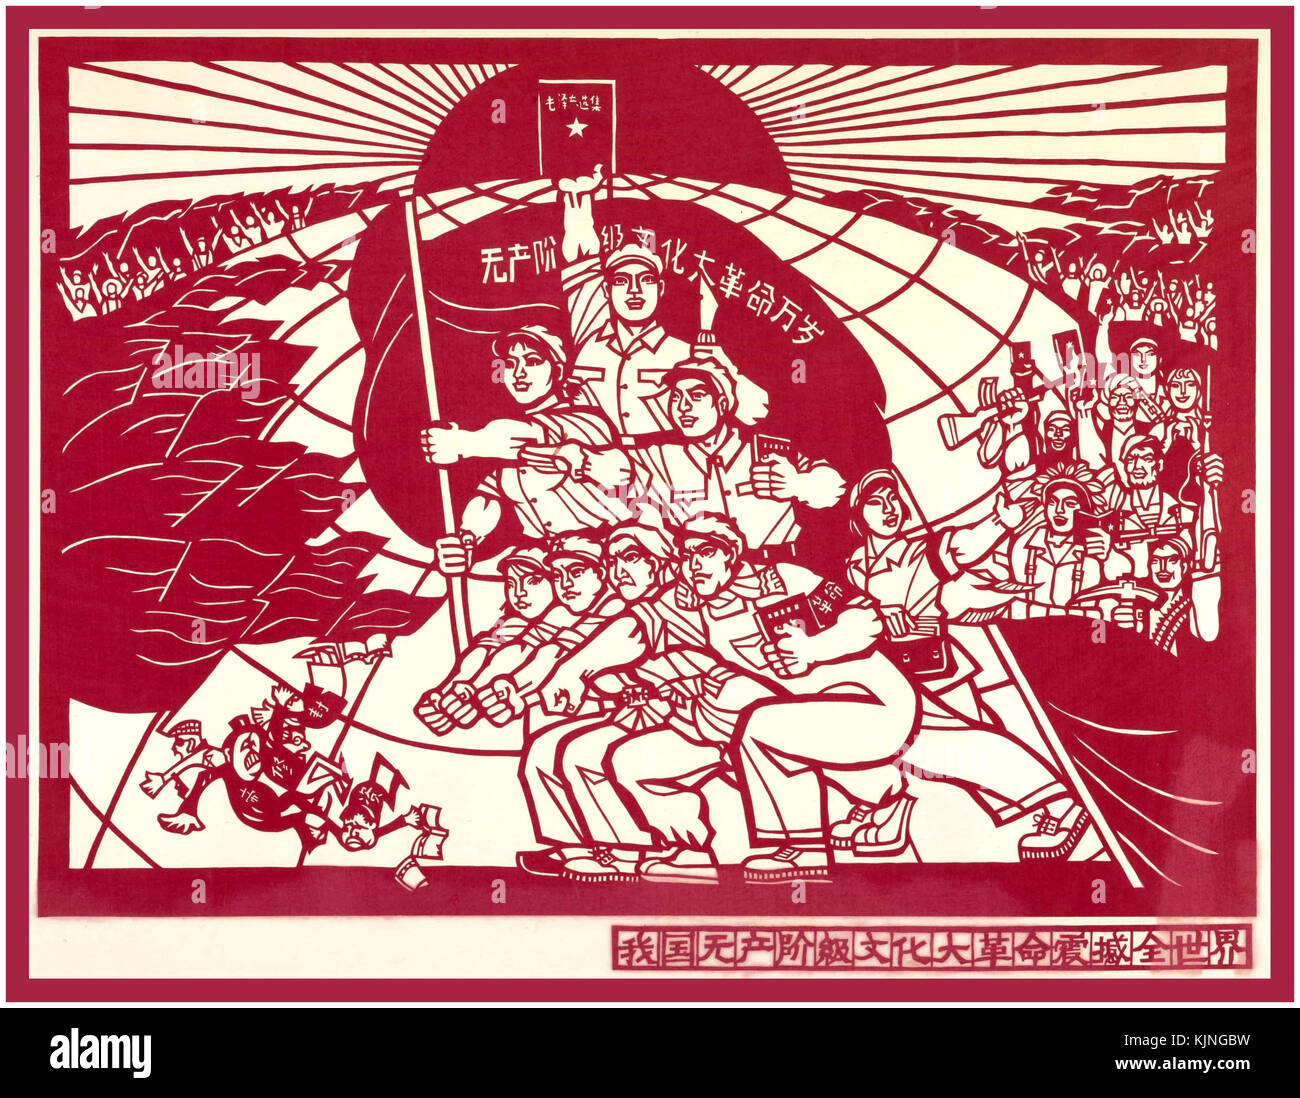 Anni sessanta poster di propaganda nella Repubblica popolare cinese del Presidente Mao con lavoratori azienda red book, utilizzando gli antichi cinesi craft di carta-cut Foto Stock